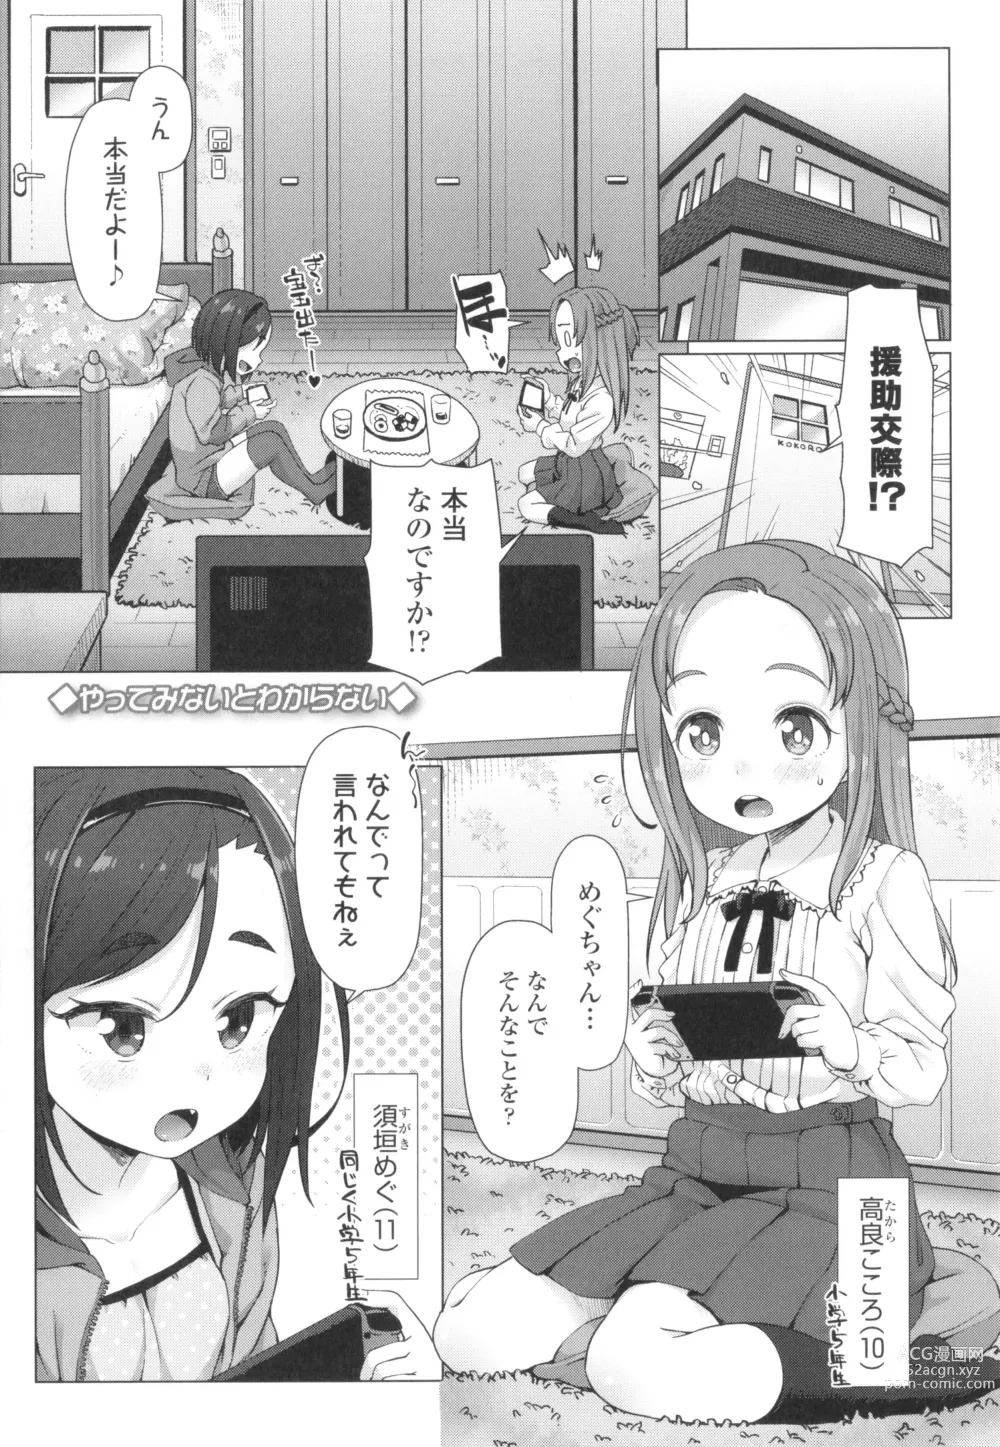 Page 6 of manga Nukunuku Mini Holes